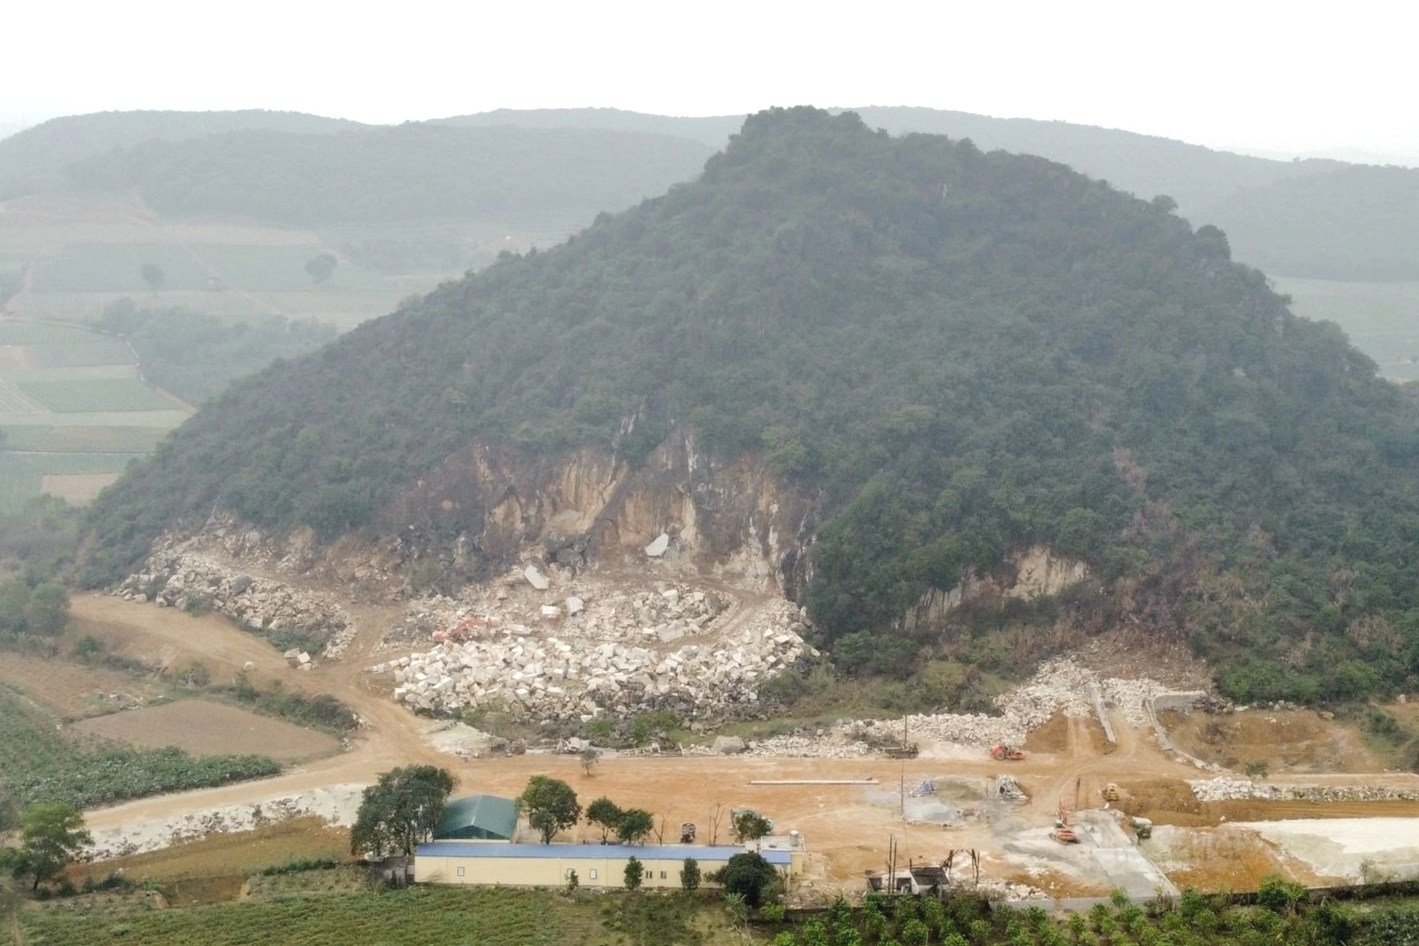 Khám phá hang động mới được phát hiện ở Thanh Hóa - 1